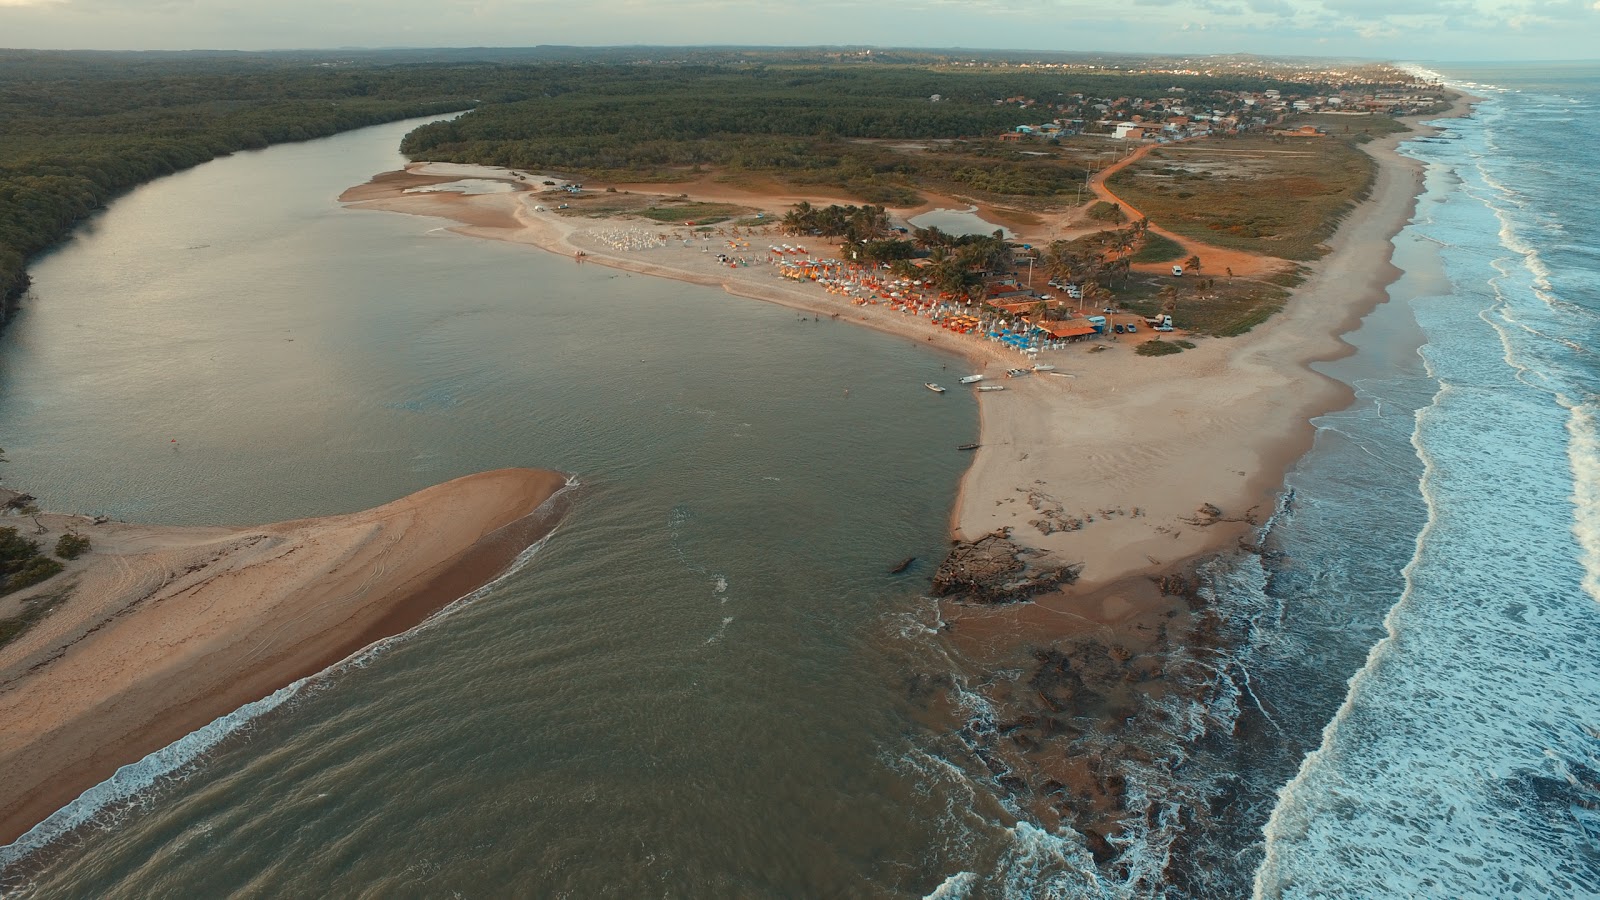 Zdjęcie Praia da Barra z poziomem czystości wysoki